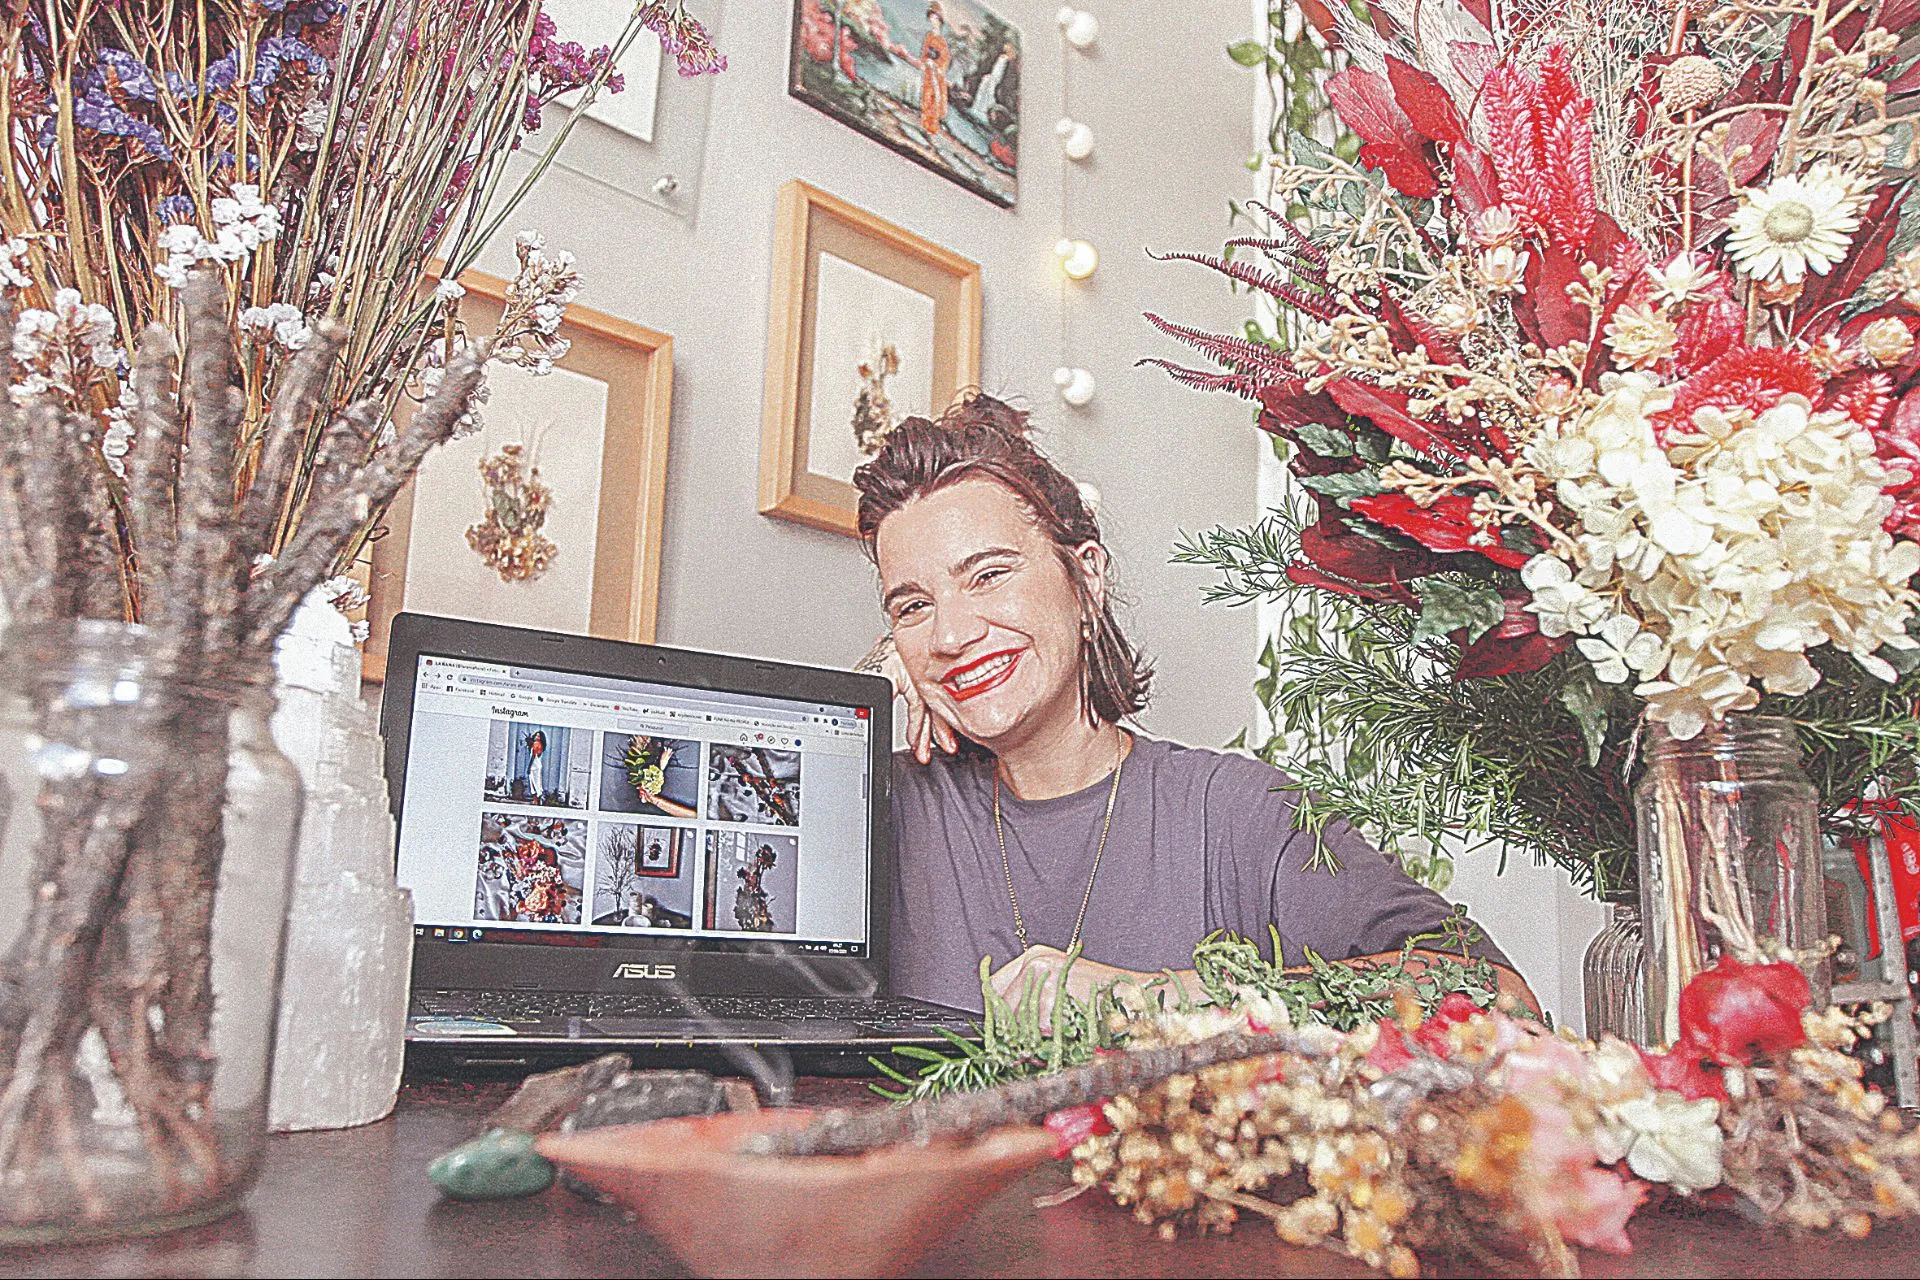 A artista plástica Bárbara Carnielli, de 33 anos,  trabalha com confecção de arranjos com flores secas, incensos naturais, acessórios florais, por exemplo